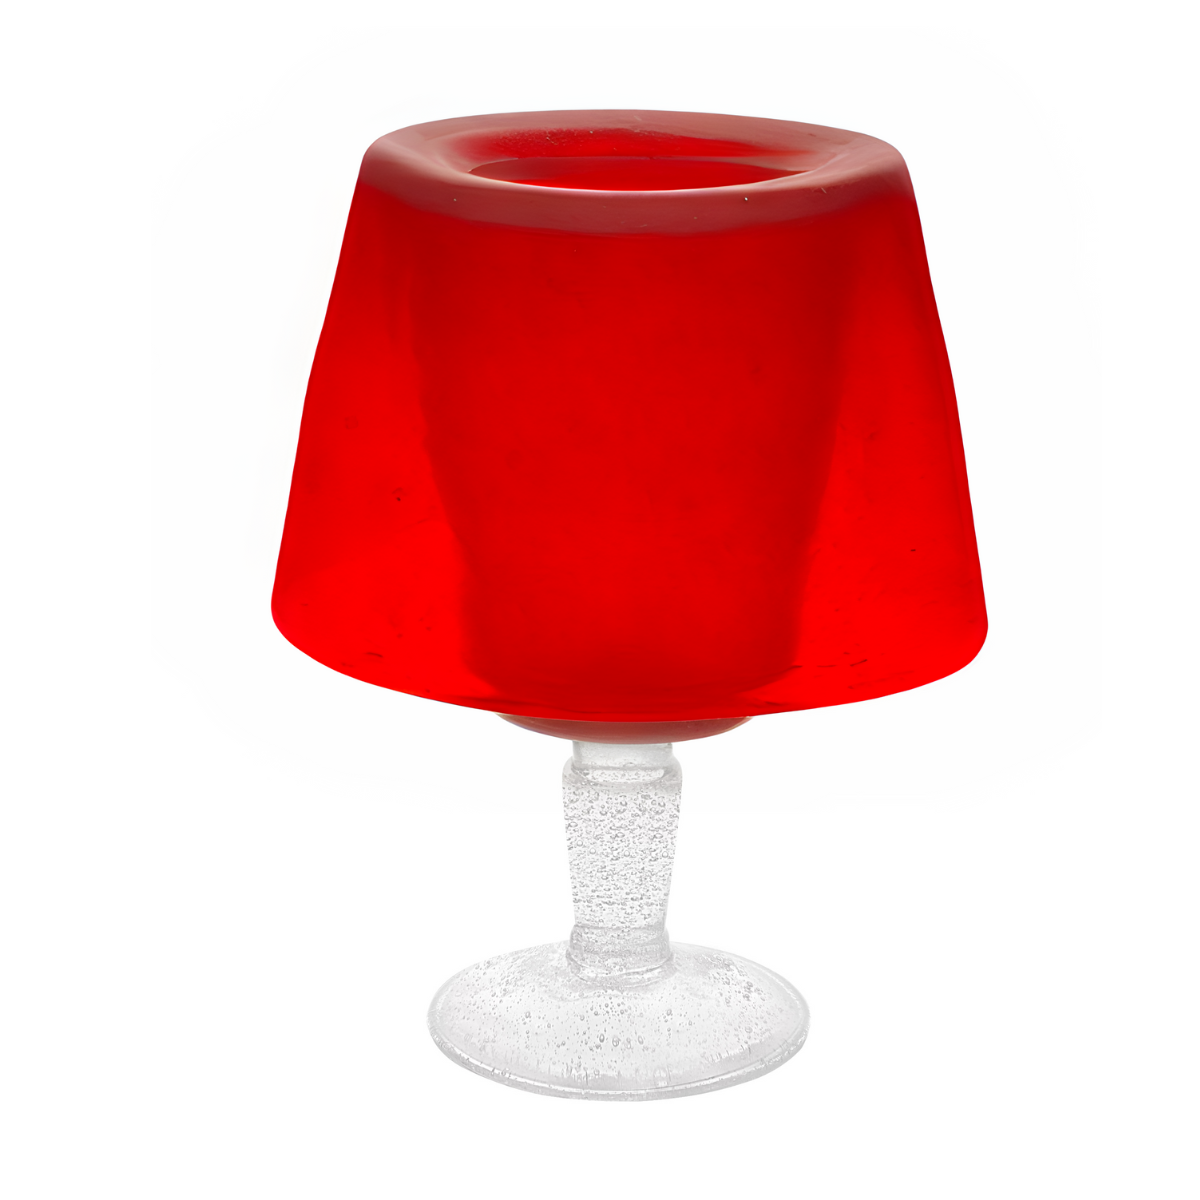 000607 - LAMP - RED - MEMENTO ORIGINALE – SERAFINO ZANI Shop